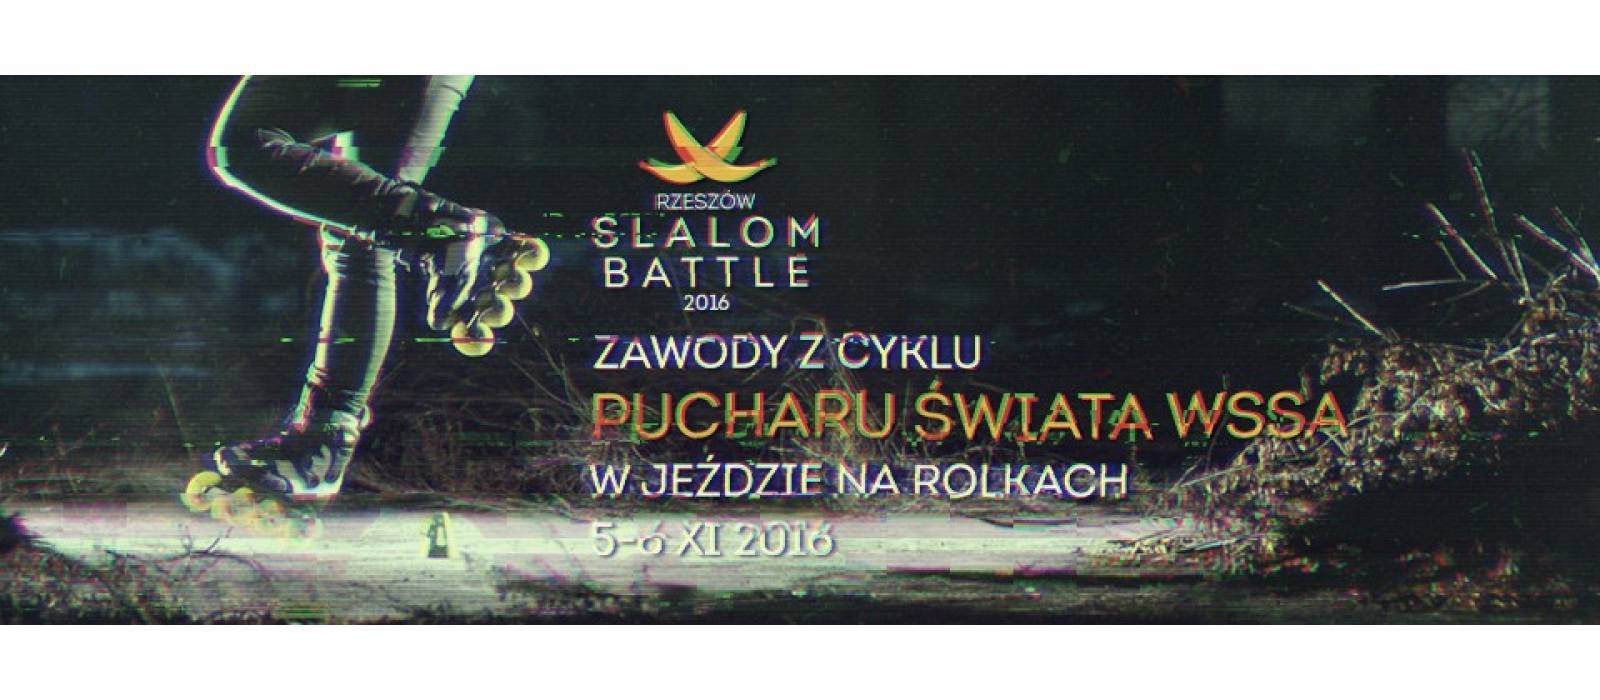 Rzeszów Slalolm Battle 2016 - 1